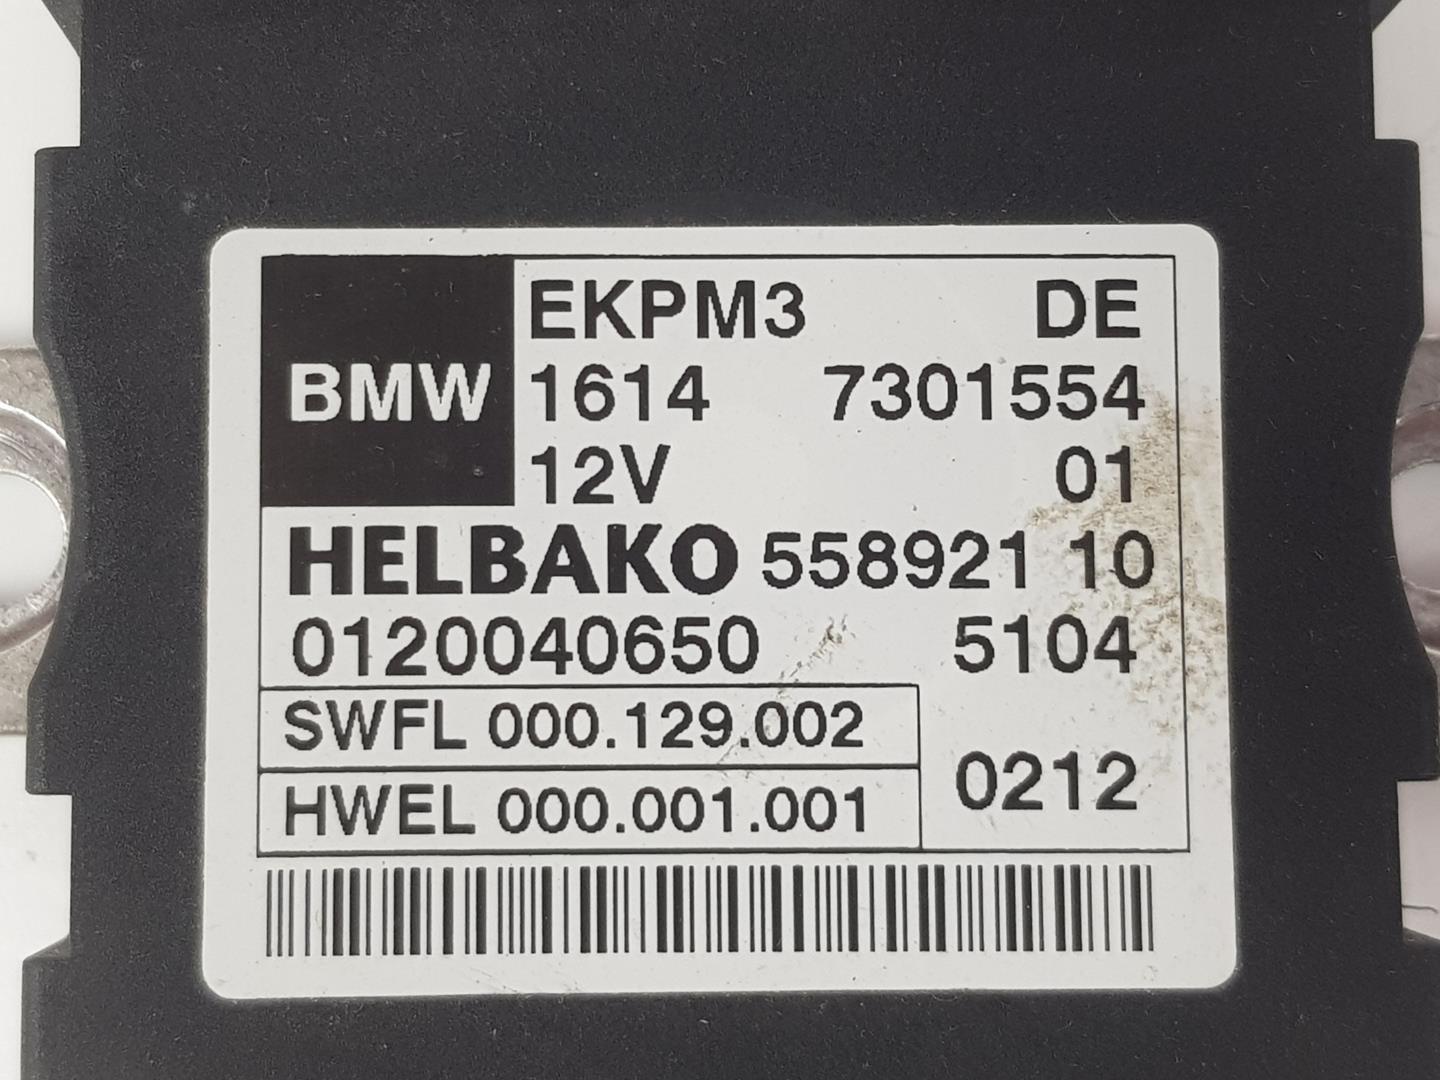 BMW 7 Series F01/F02 (2008-2015) Muut ohjausyksiköt 16147301554, 16147411596 19906930